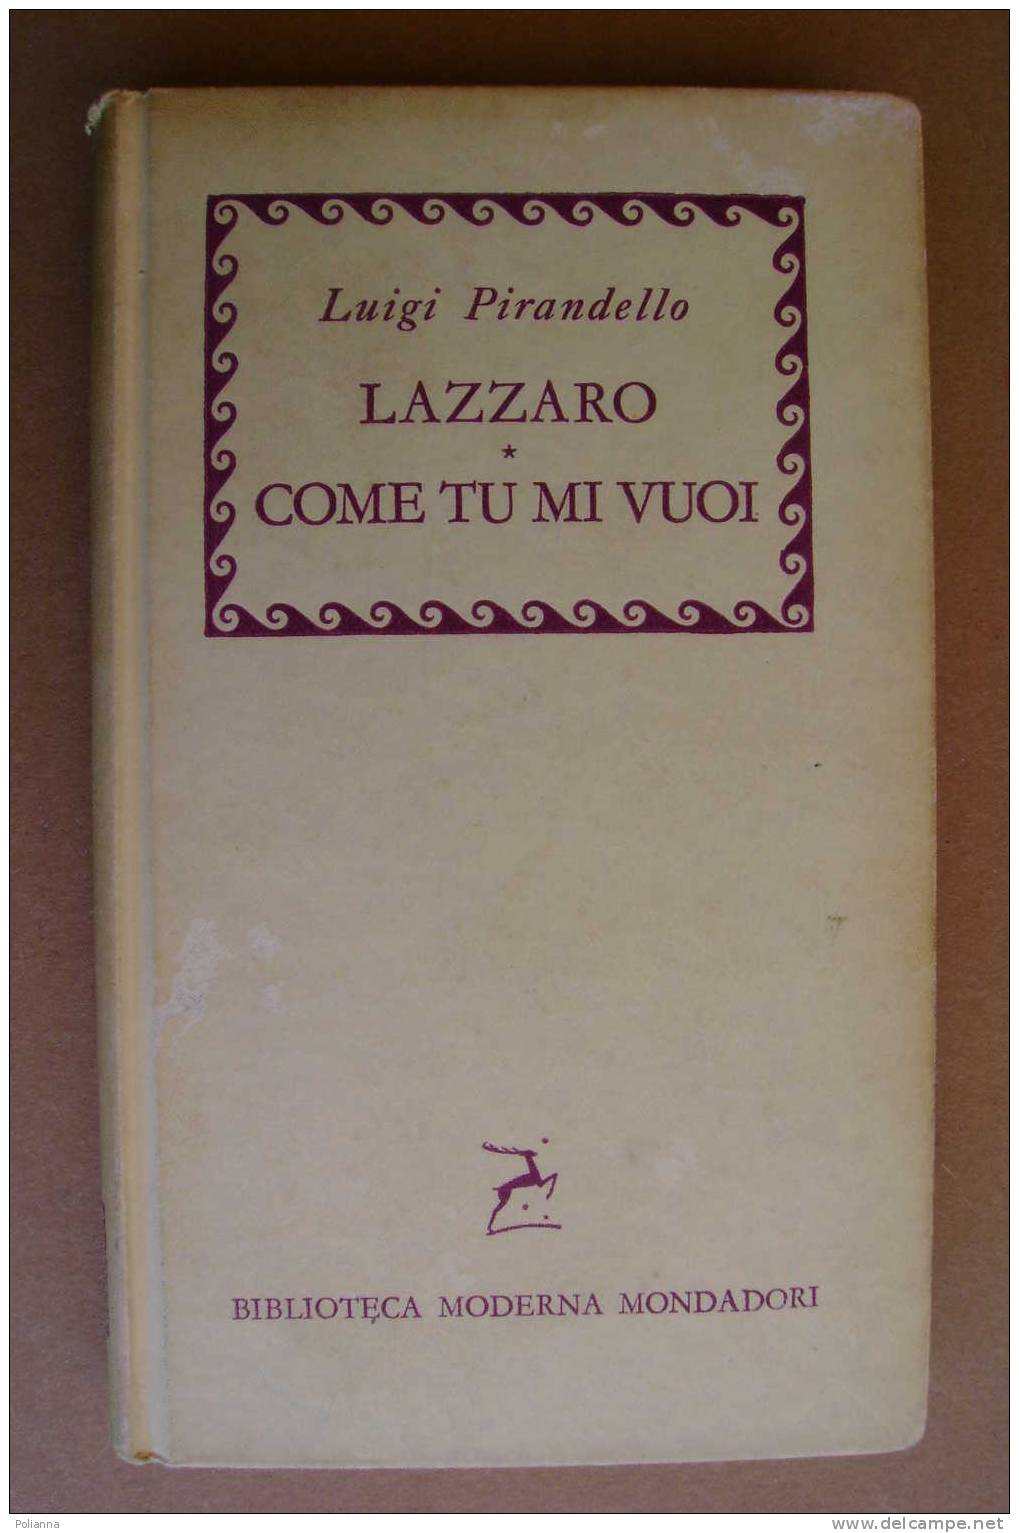 PAL/36 Luigi Pirandello LAZZARO COME TU MI VUOI Biblioteca Monderna Mondadori 1957/ Teatro - Sagen En Korte Verhalen